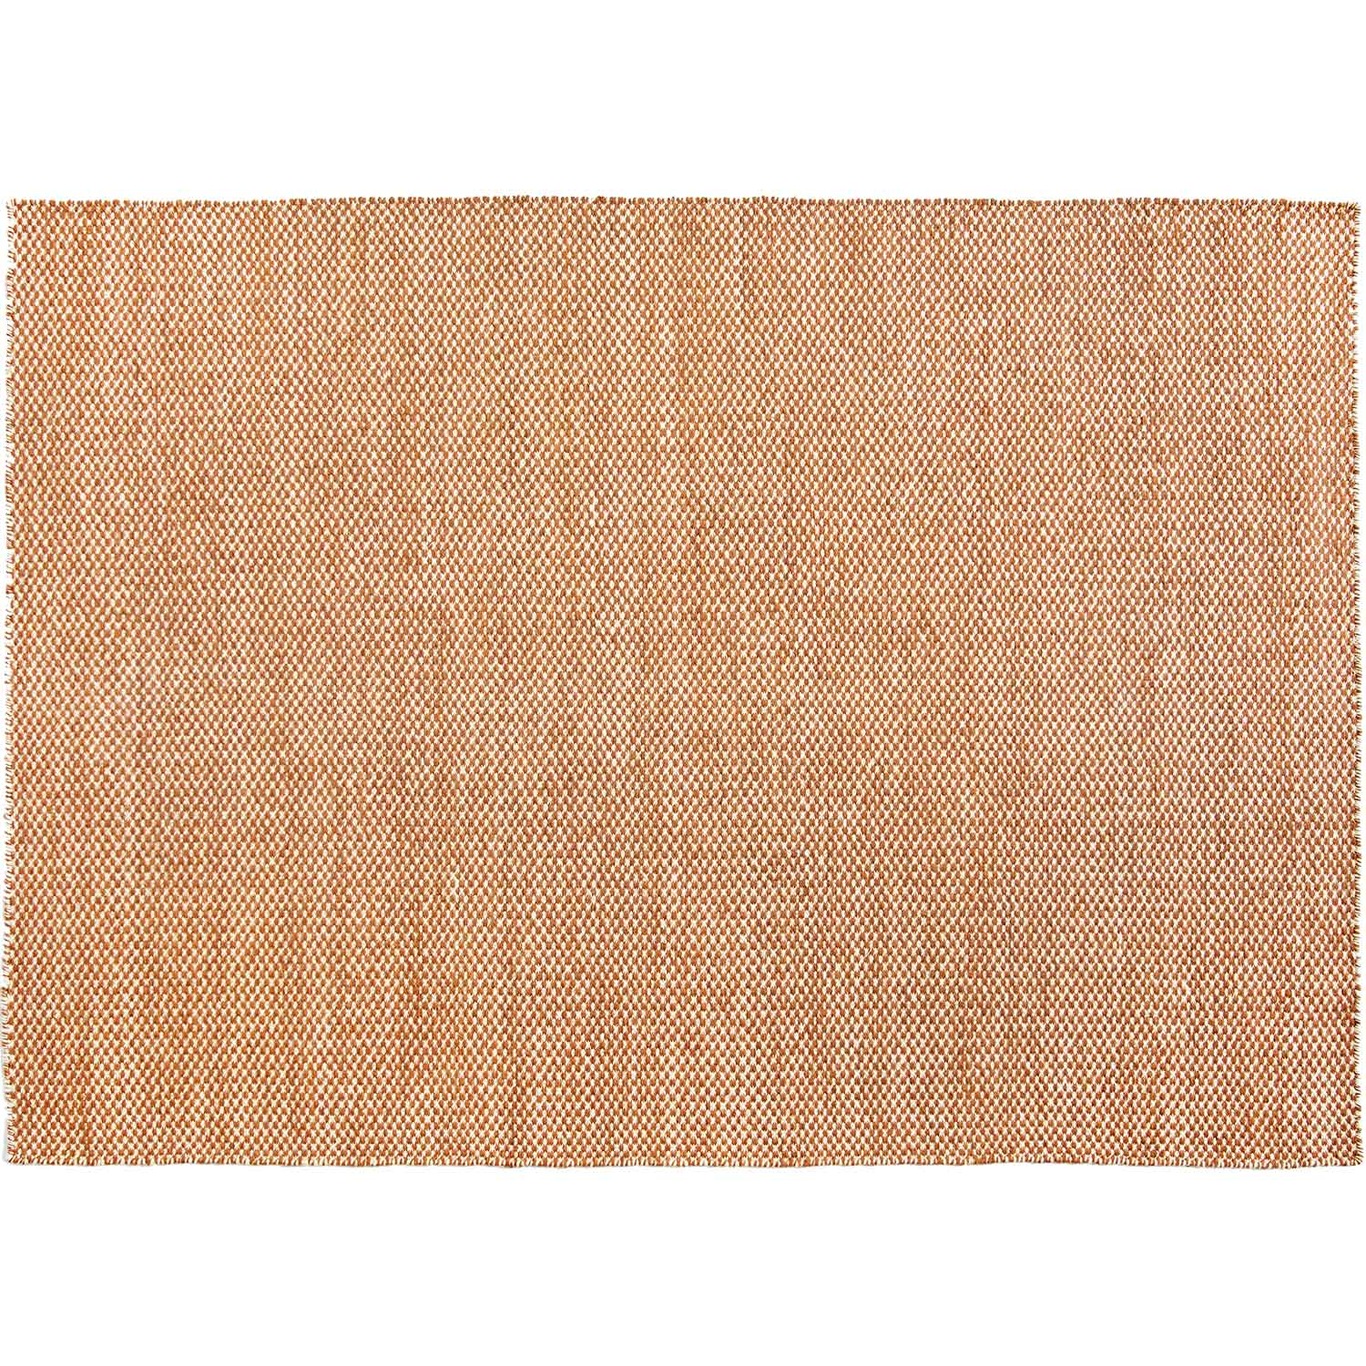 Moiré Kelim Rug, 200x300 cm / Cinnamon